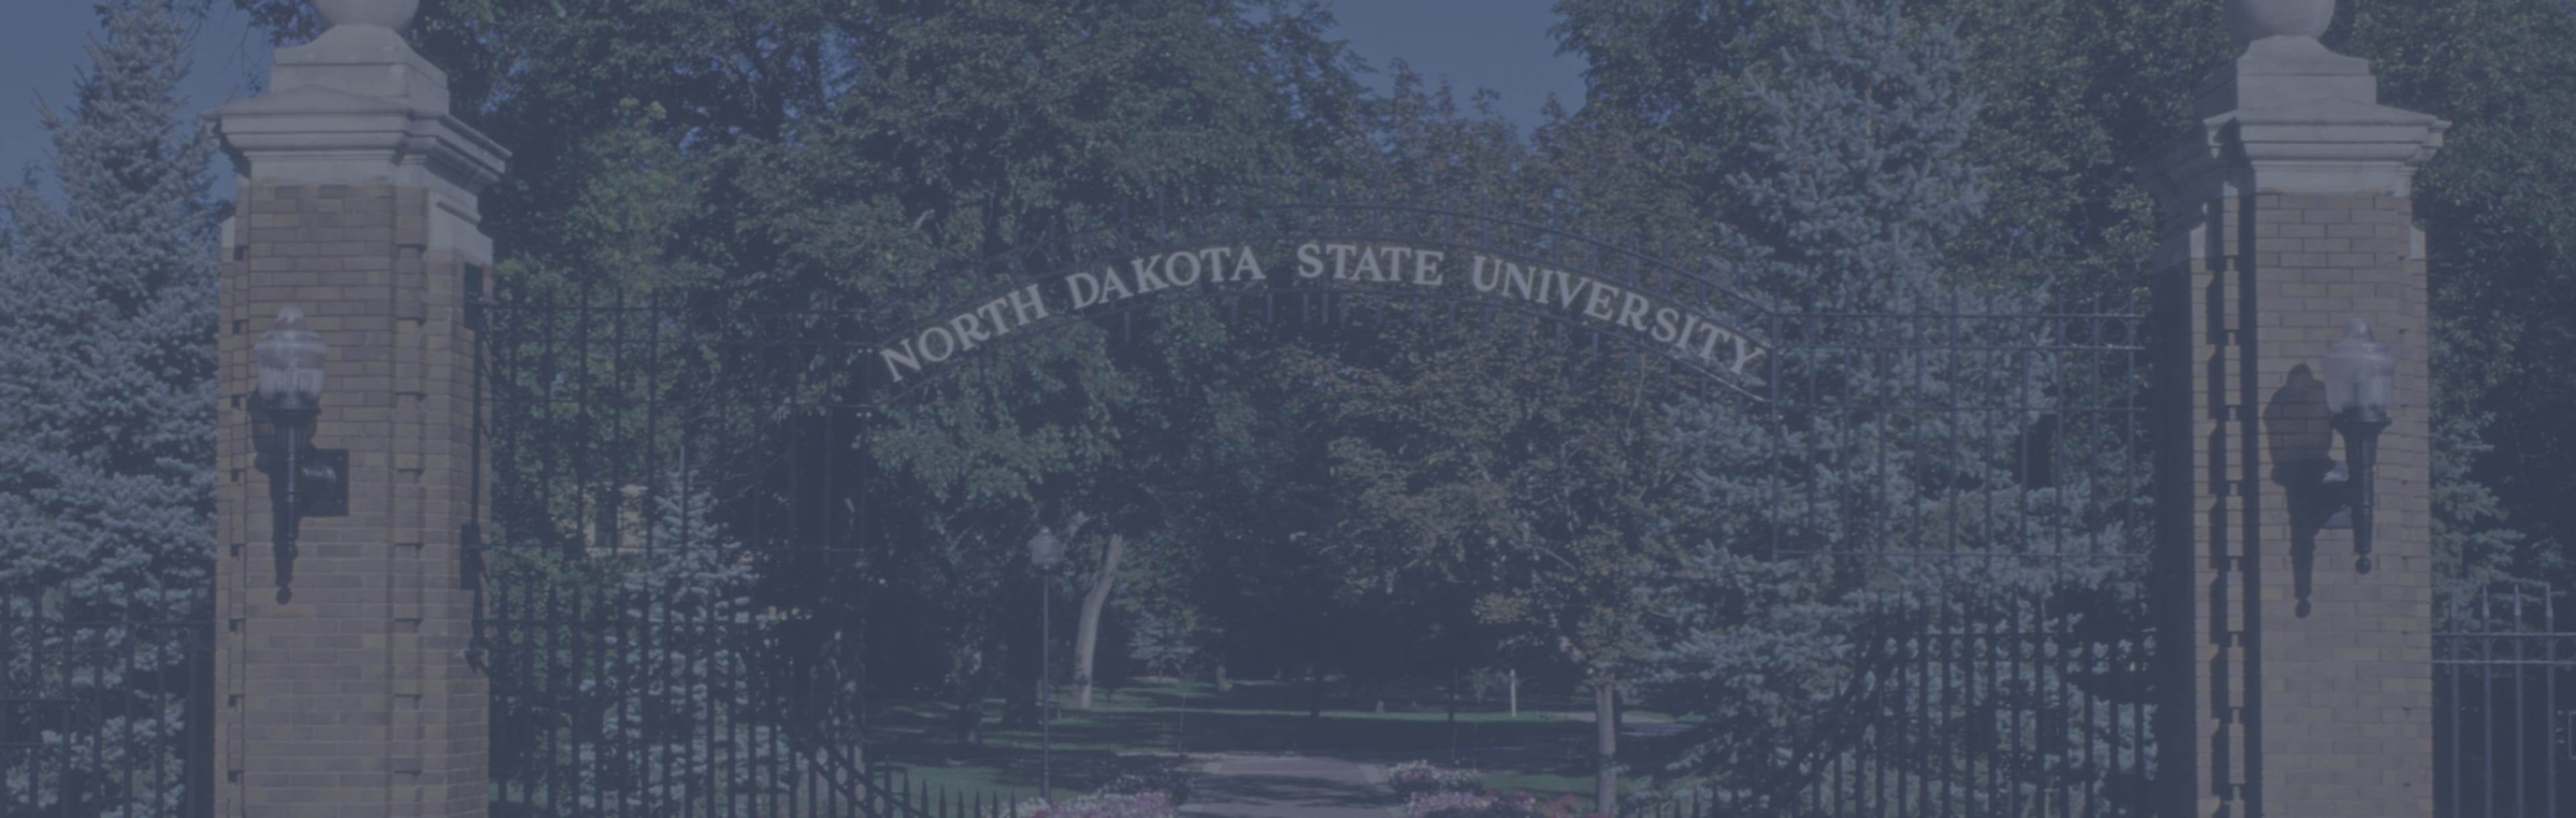 North Dakota State University - Graduate School Ph.D. v elektrotechnice a počítačovém inženýrství